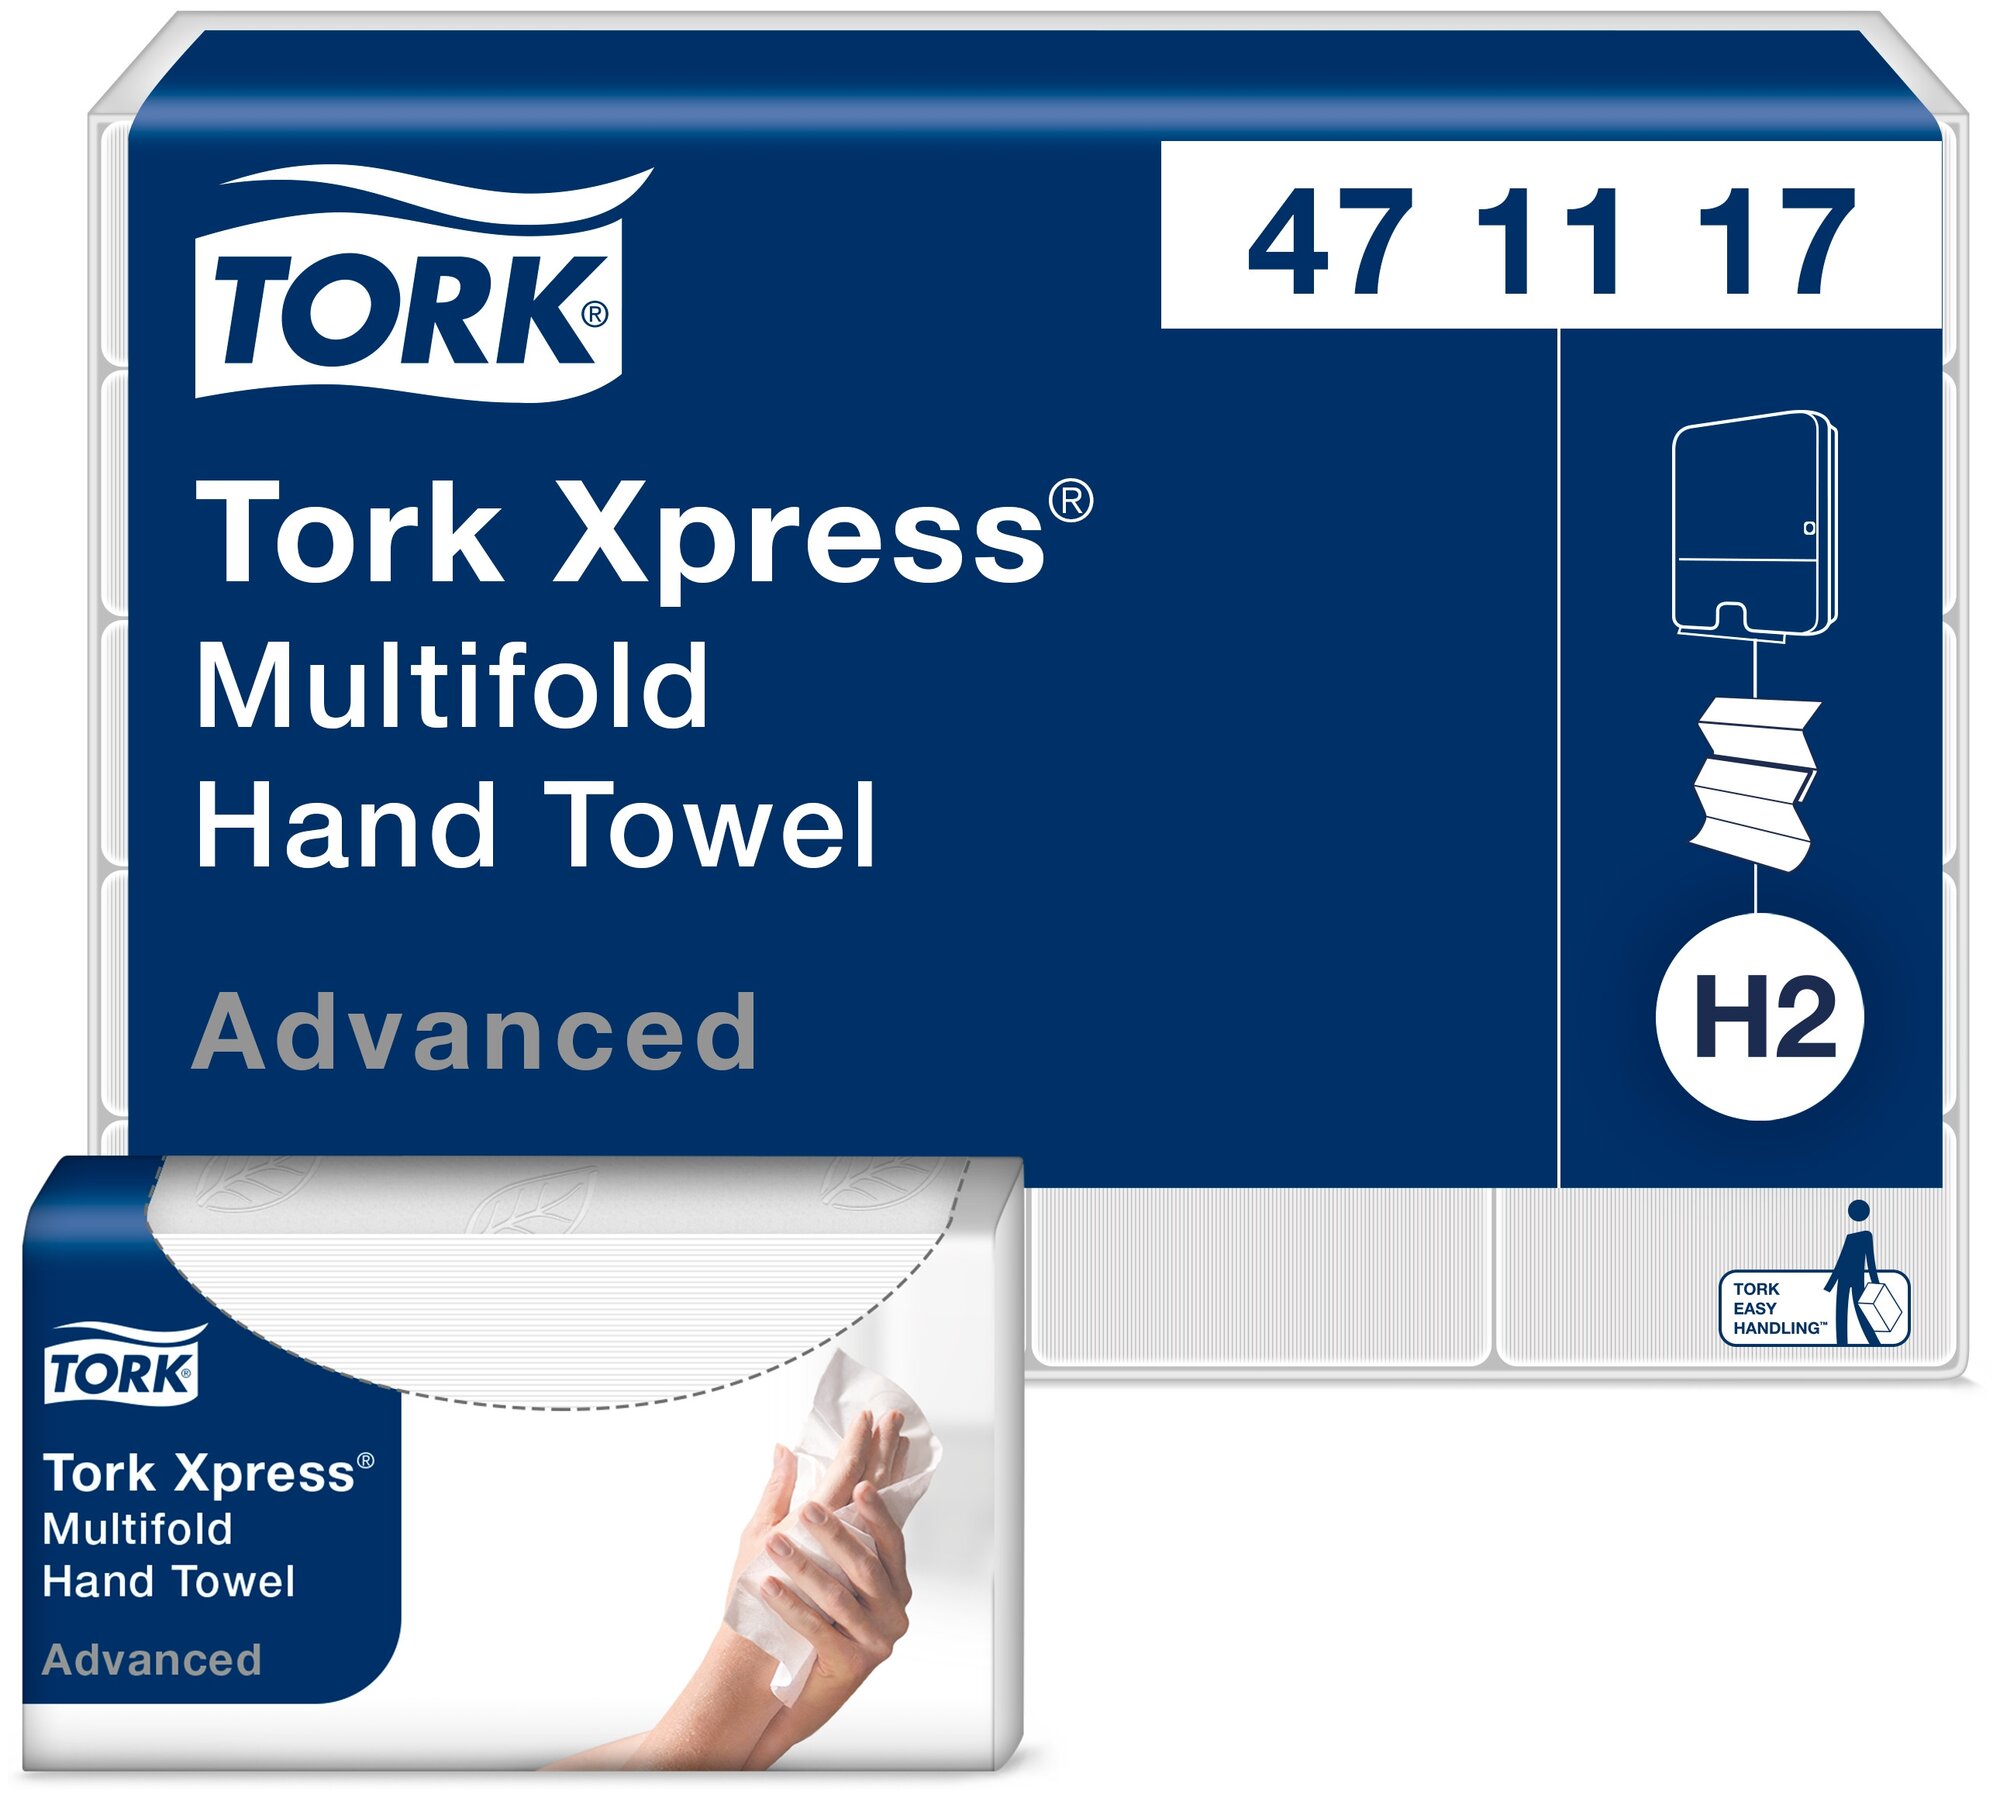 Полотенца бумажные для держателя 2-слойные Tork Н2 Xpress Multifold, листовые Z-сложения, 20 пачек по 190 листов (471117)